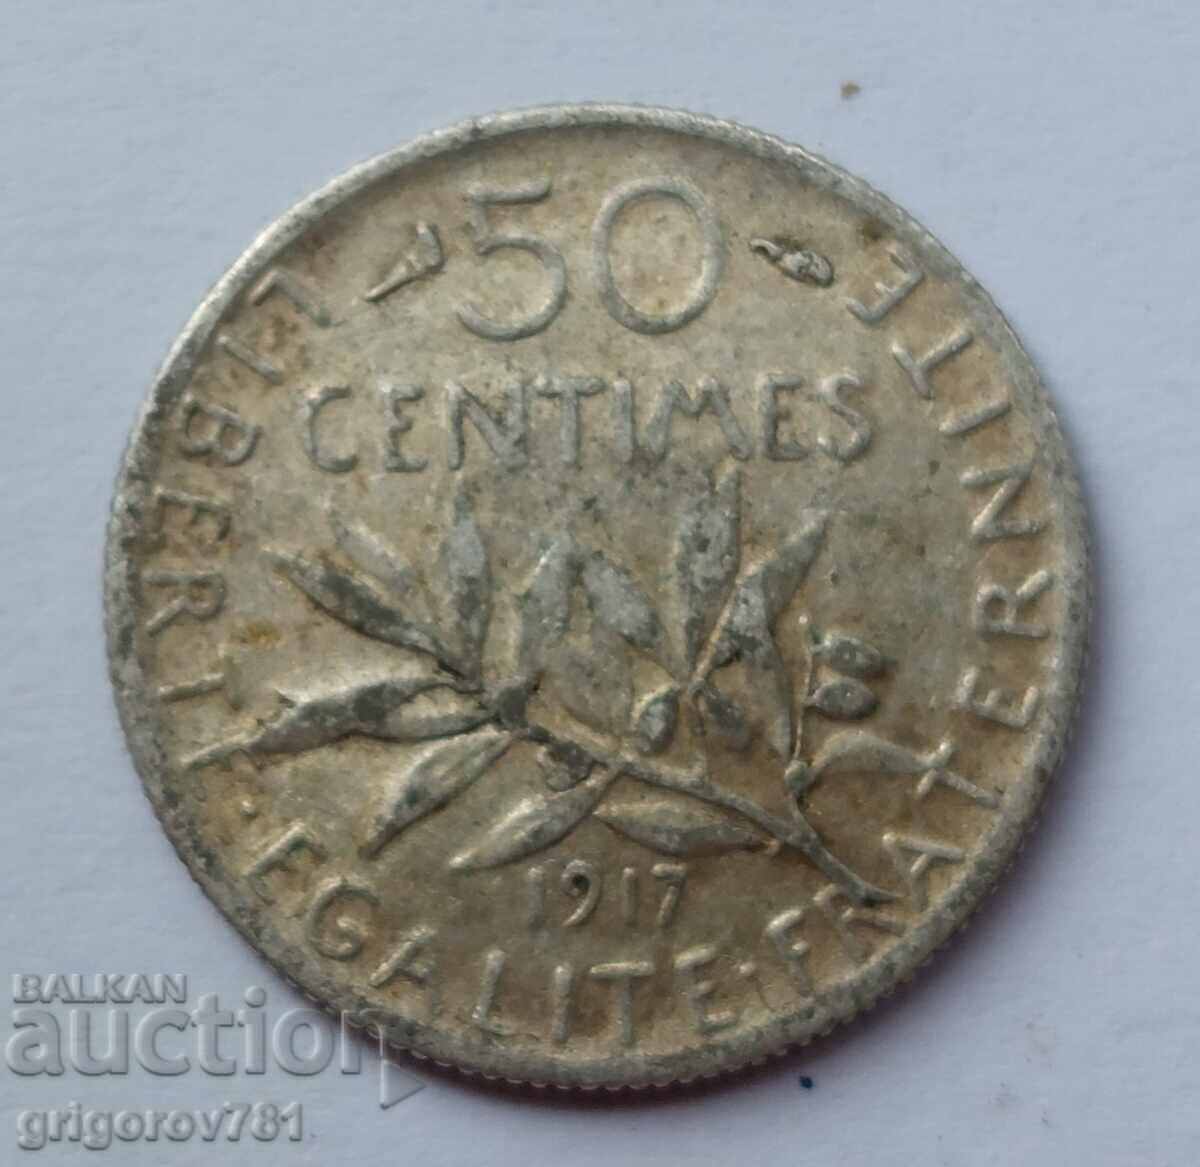 Ασημένιο 50 εκατοστά Γαλλία 1917 - ασημένιο νόμισμα №47